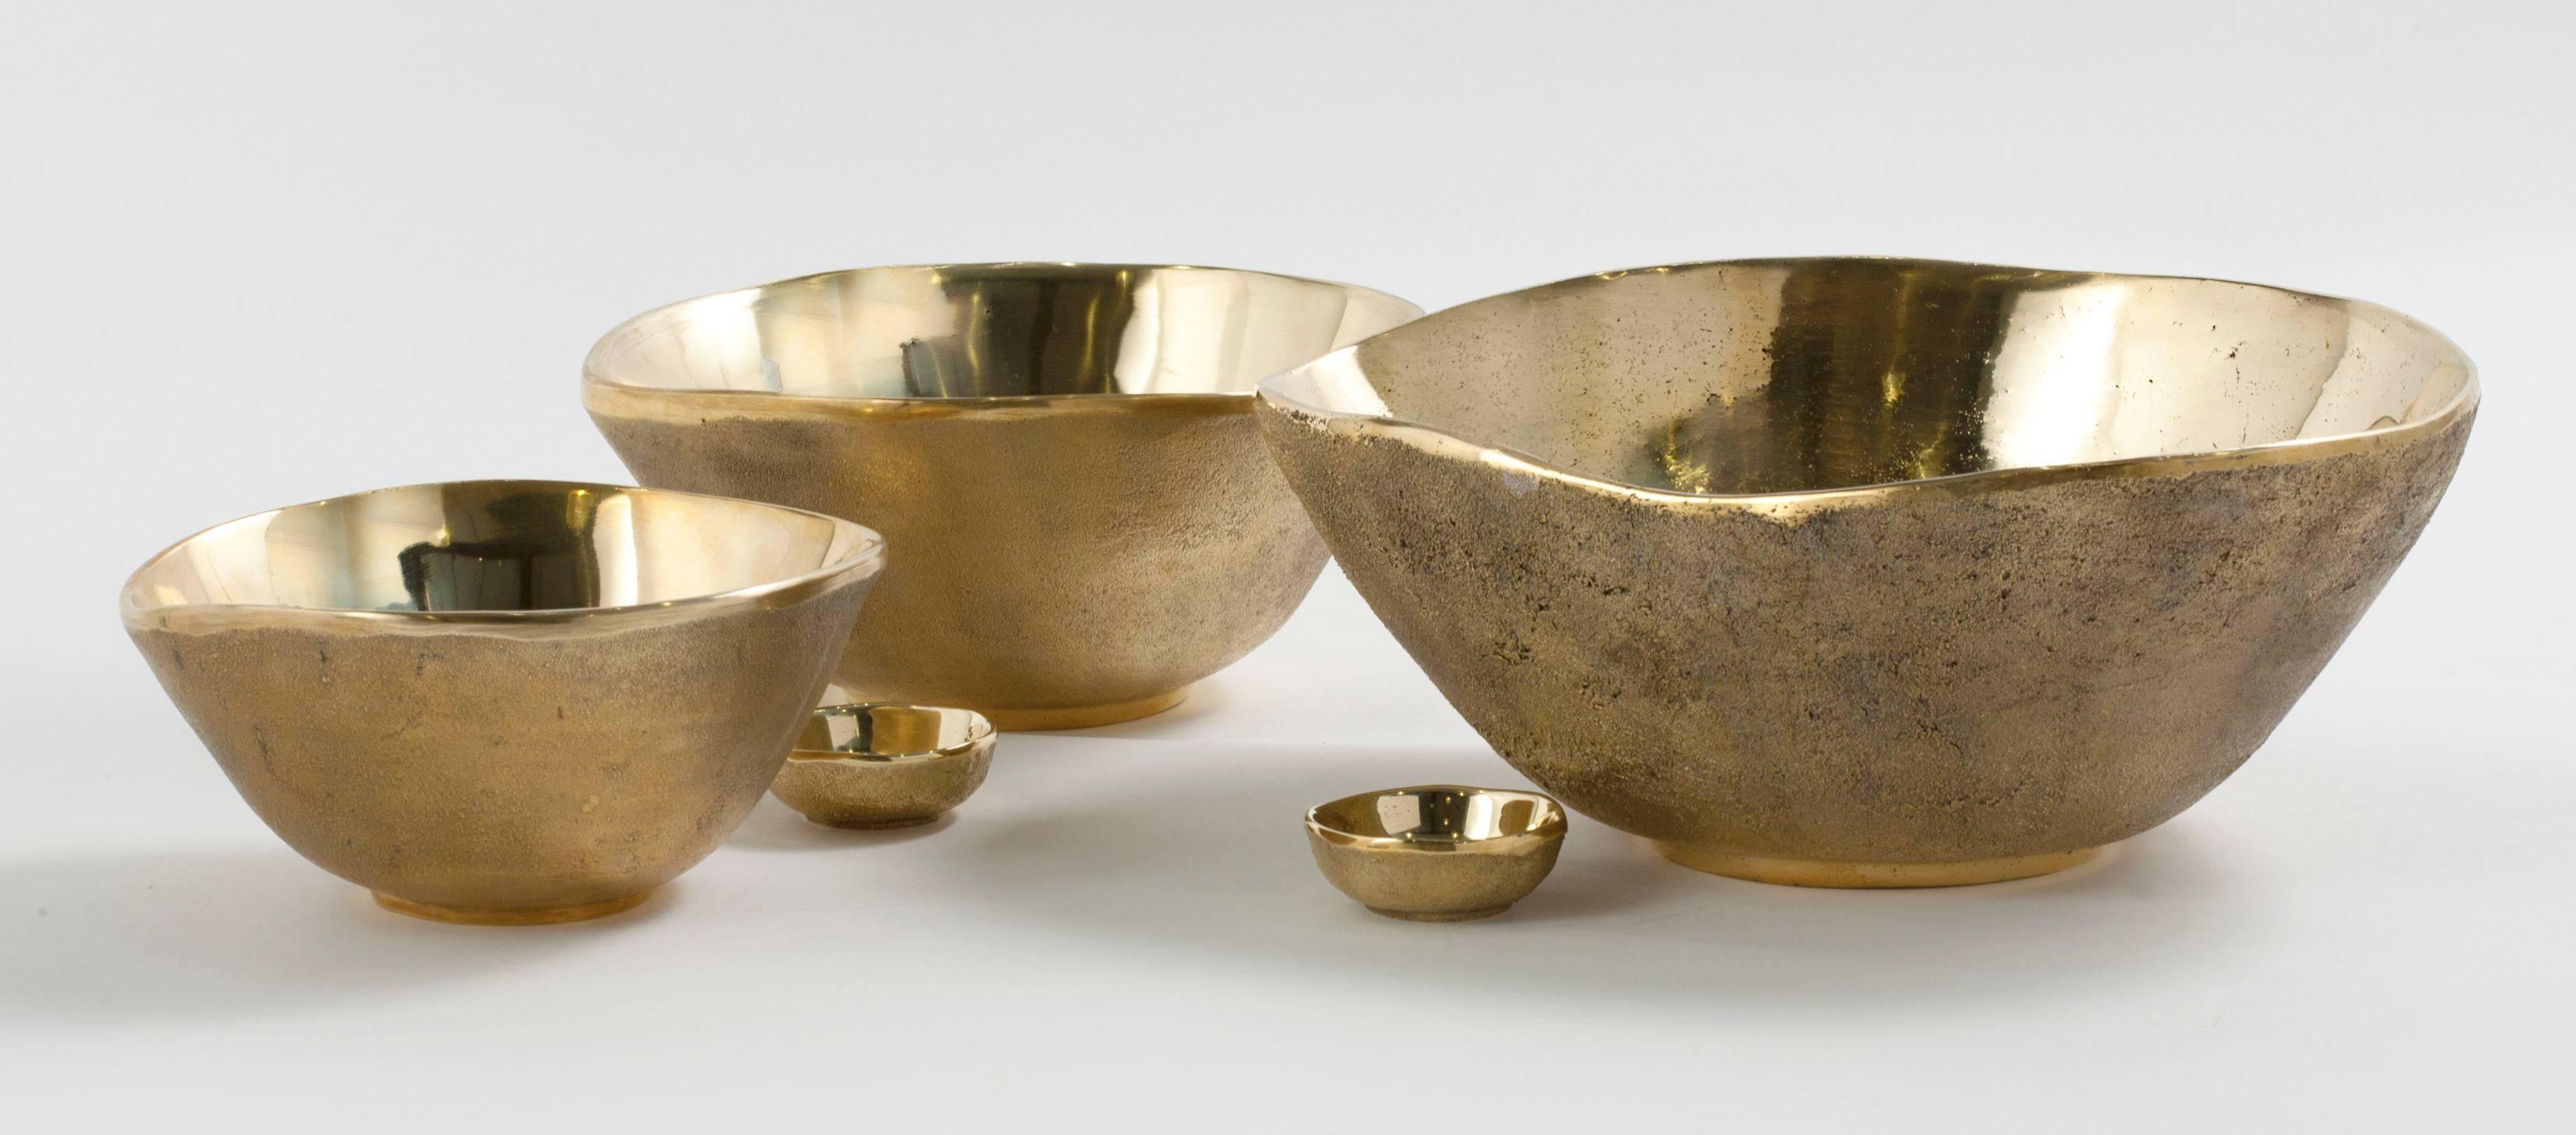 3 Bols en bronze de Jaimal Odedra. 

Chaque pièce est moulée au sable par des artisans au Maroc. Estampillé : Jaimal Odedra.

Les dimensions des trois bols sont les suivantes. 

3,25